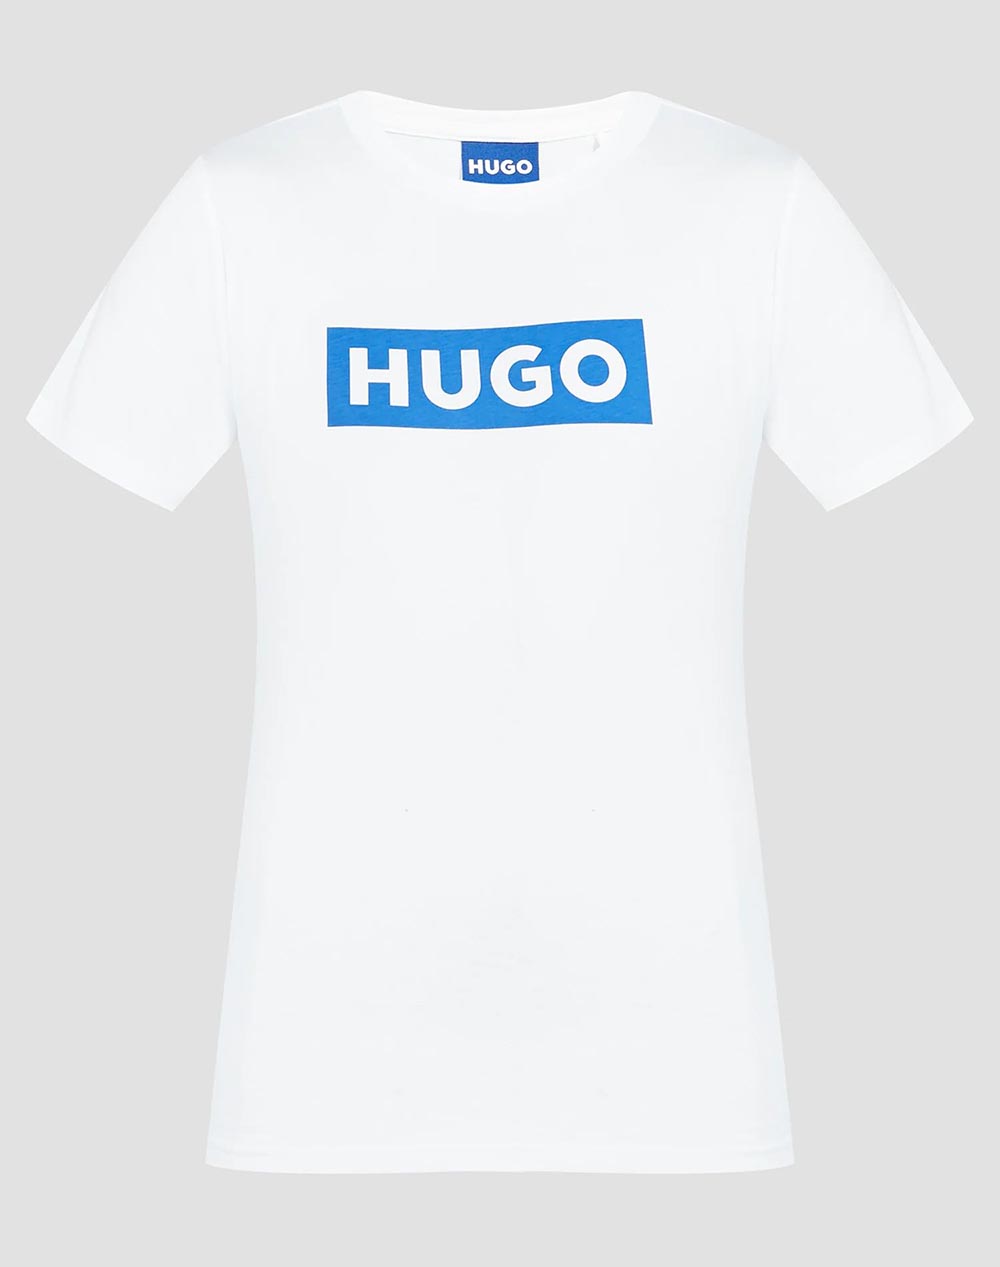 HUGO Classic Tee_B 10258021 01 50510772-100 White